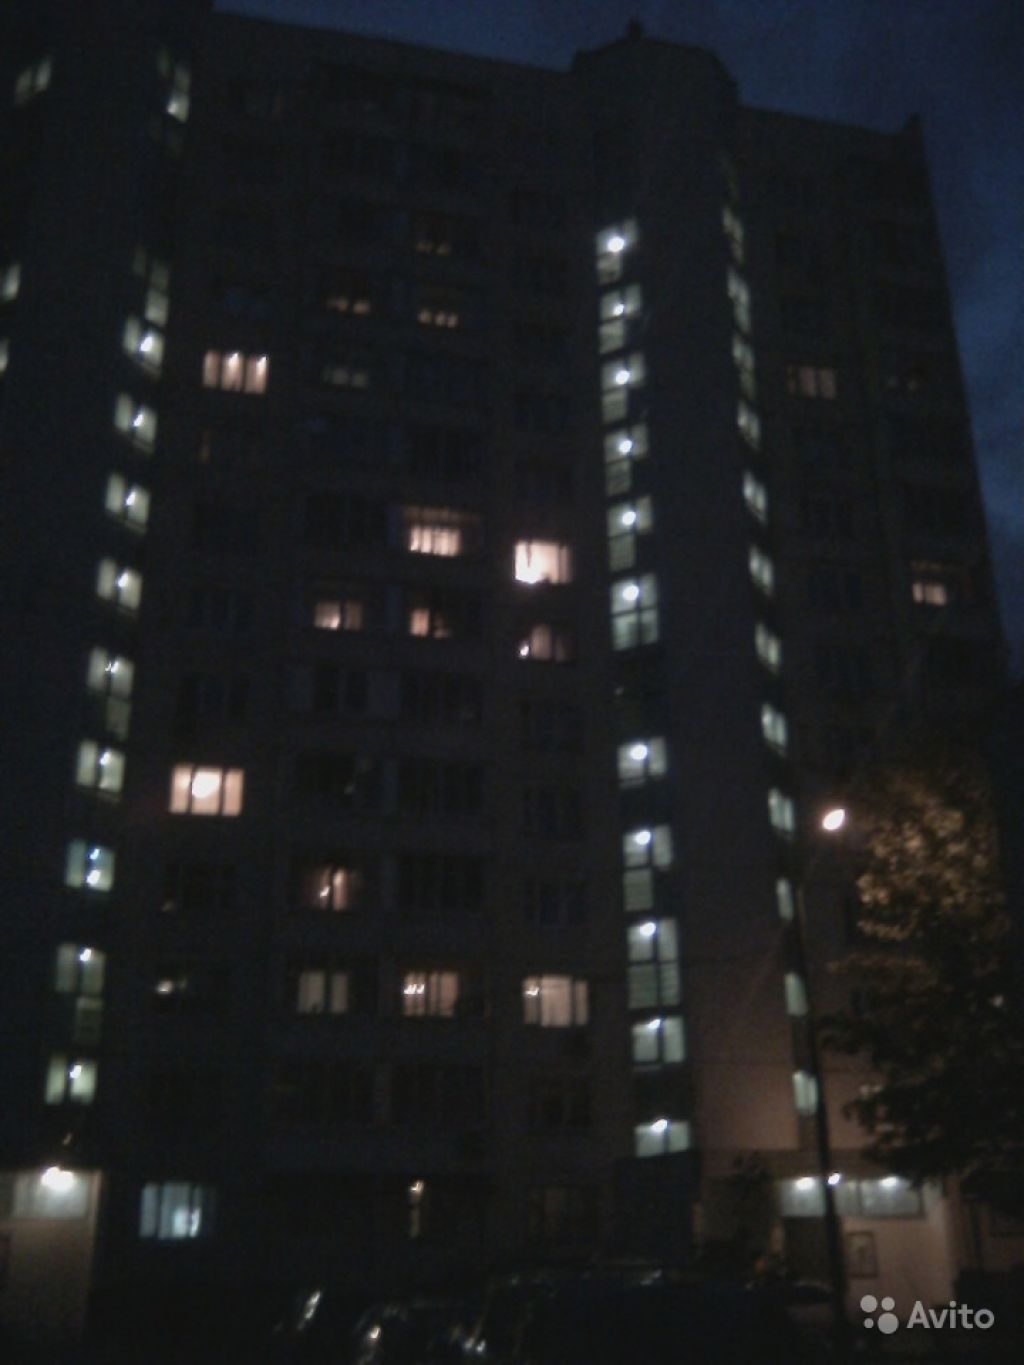 Сдам квартиру 1-к квартира 38.6 м² на 2 этаже 14-этажного блочного дома в Москве. Фото 1